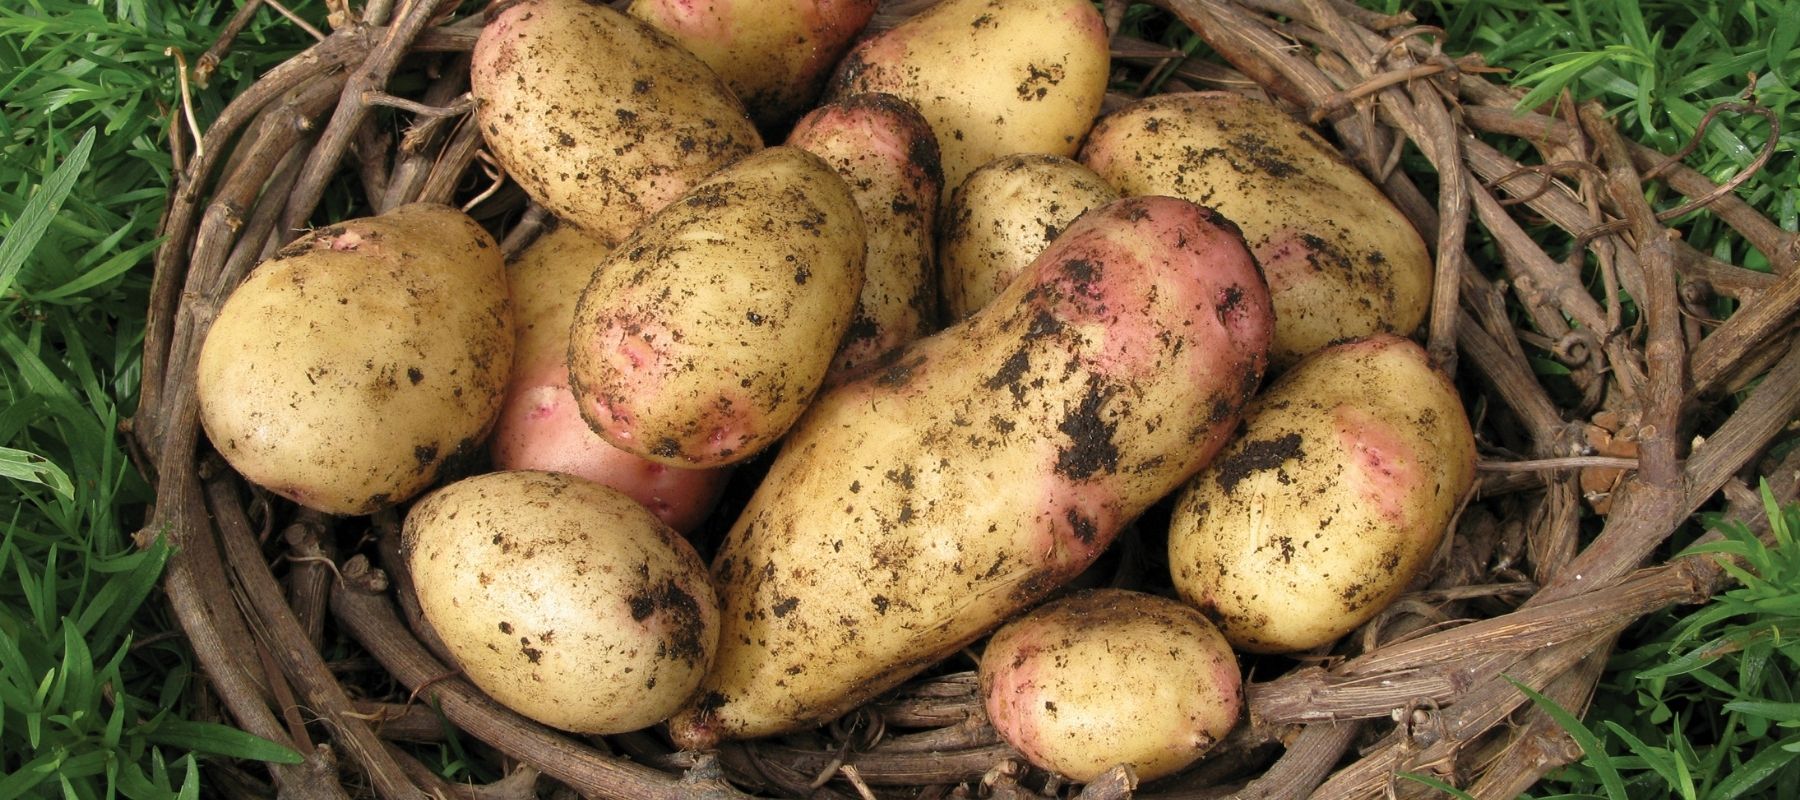 Indeterminate and Determinate Potatoes